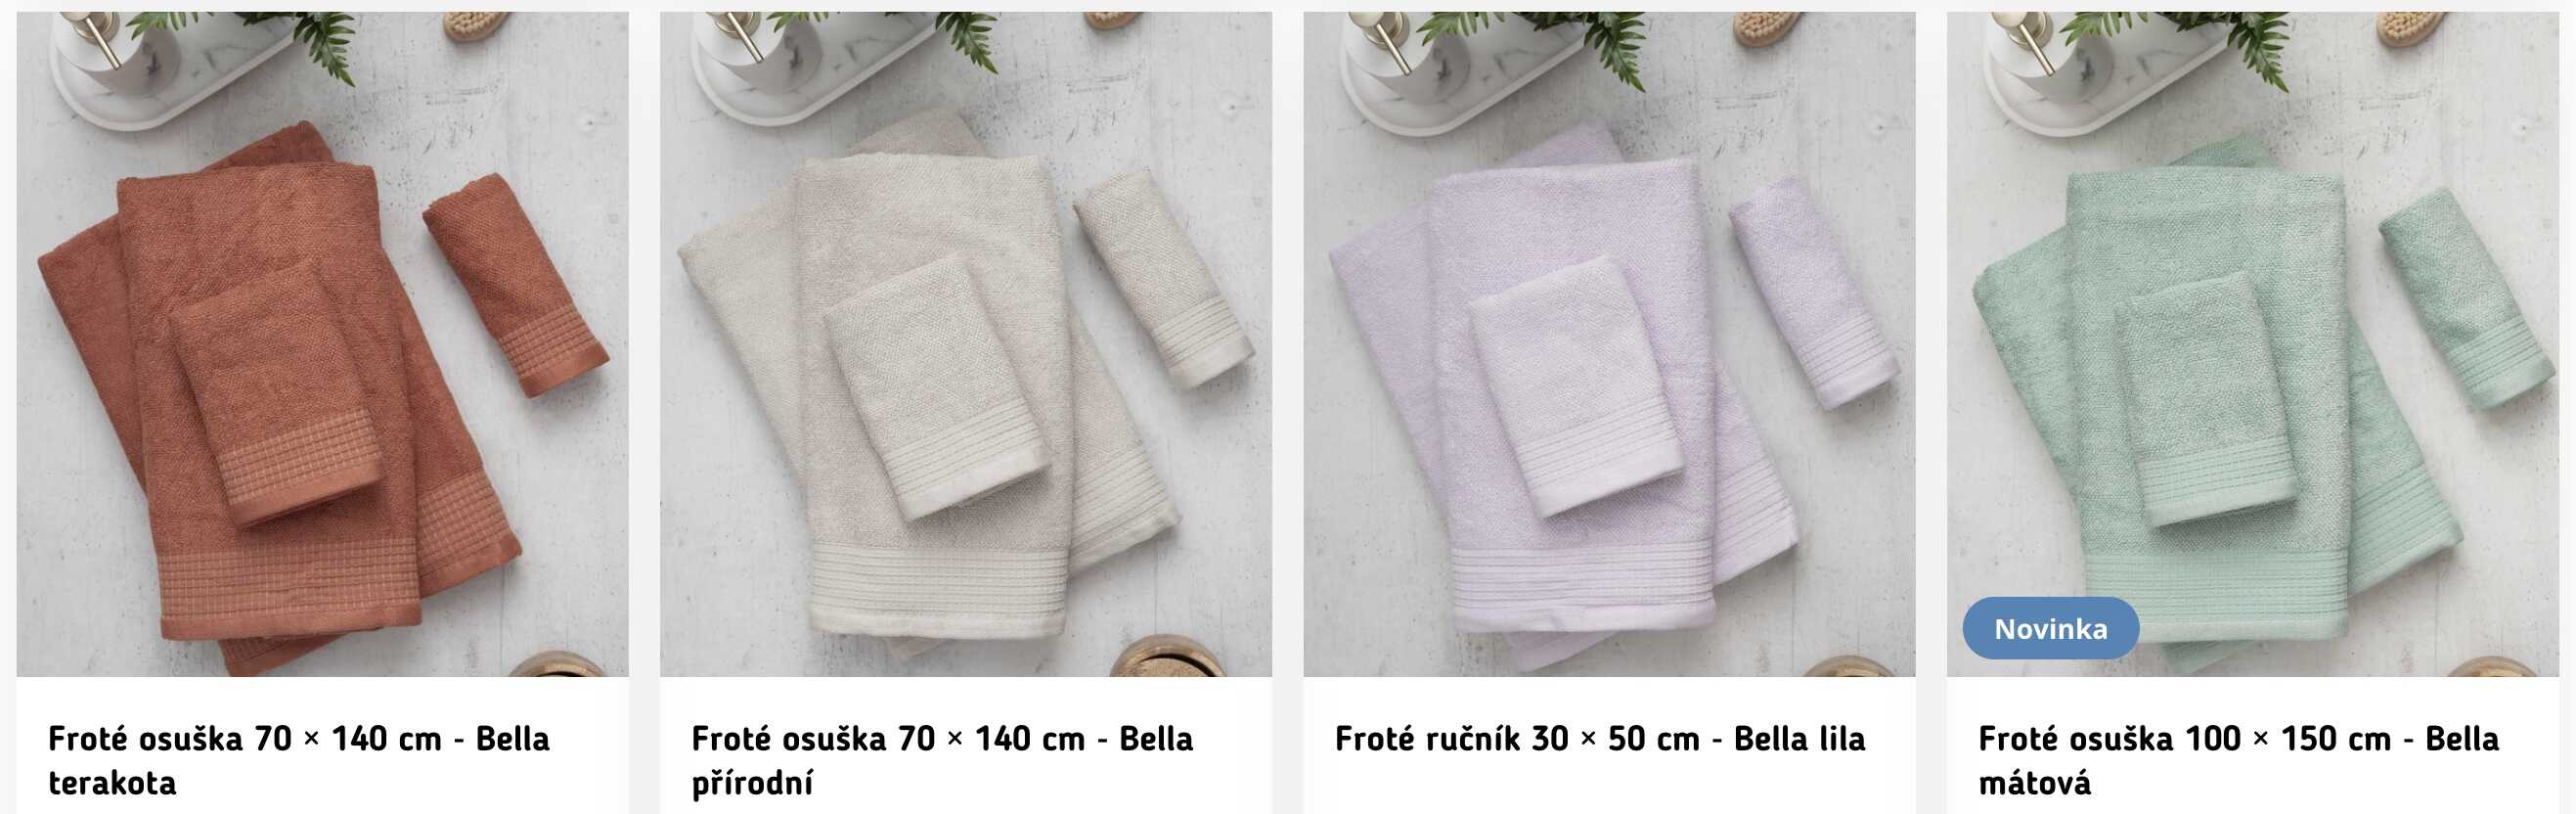 froté ručníky Bella